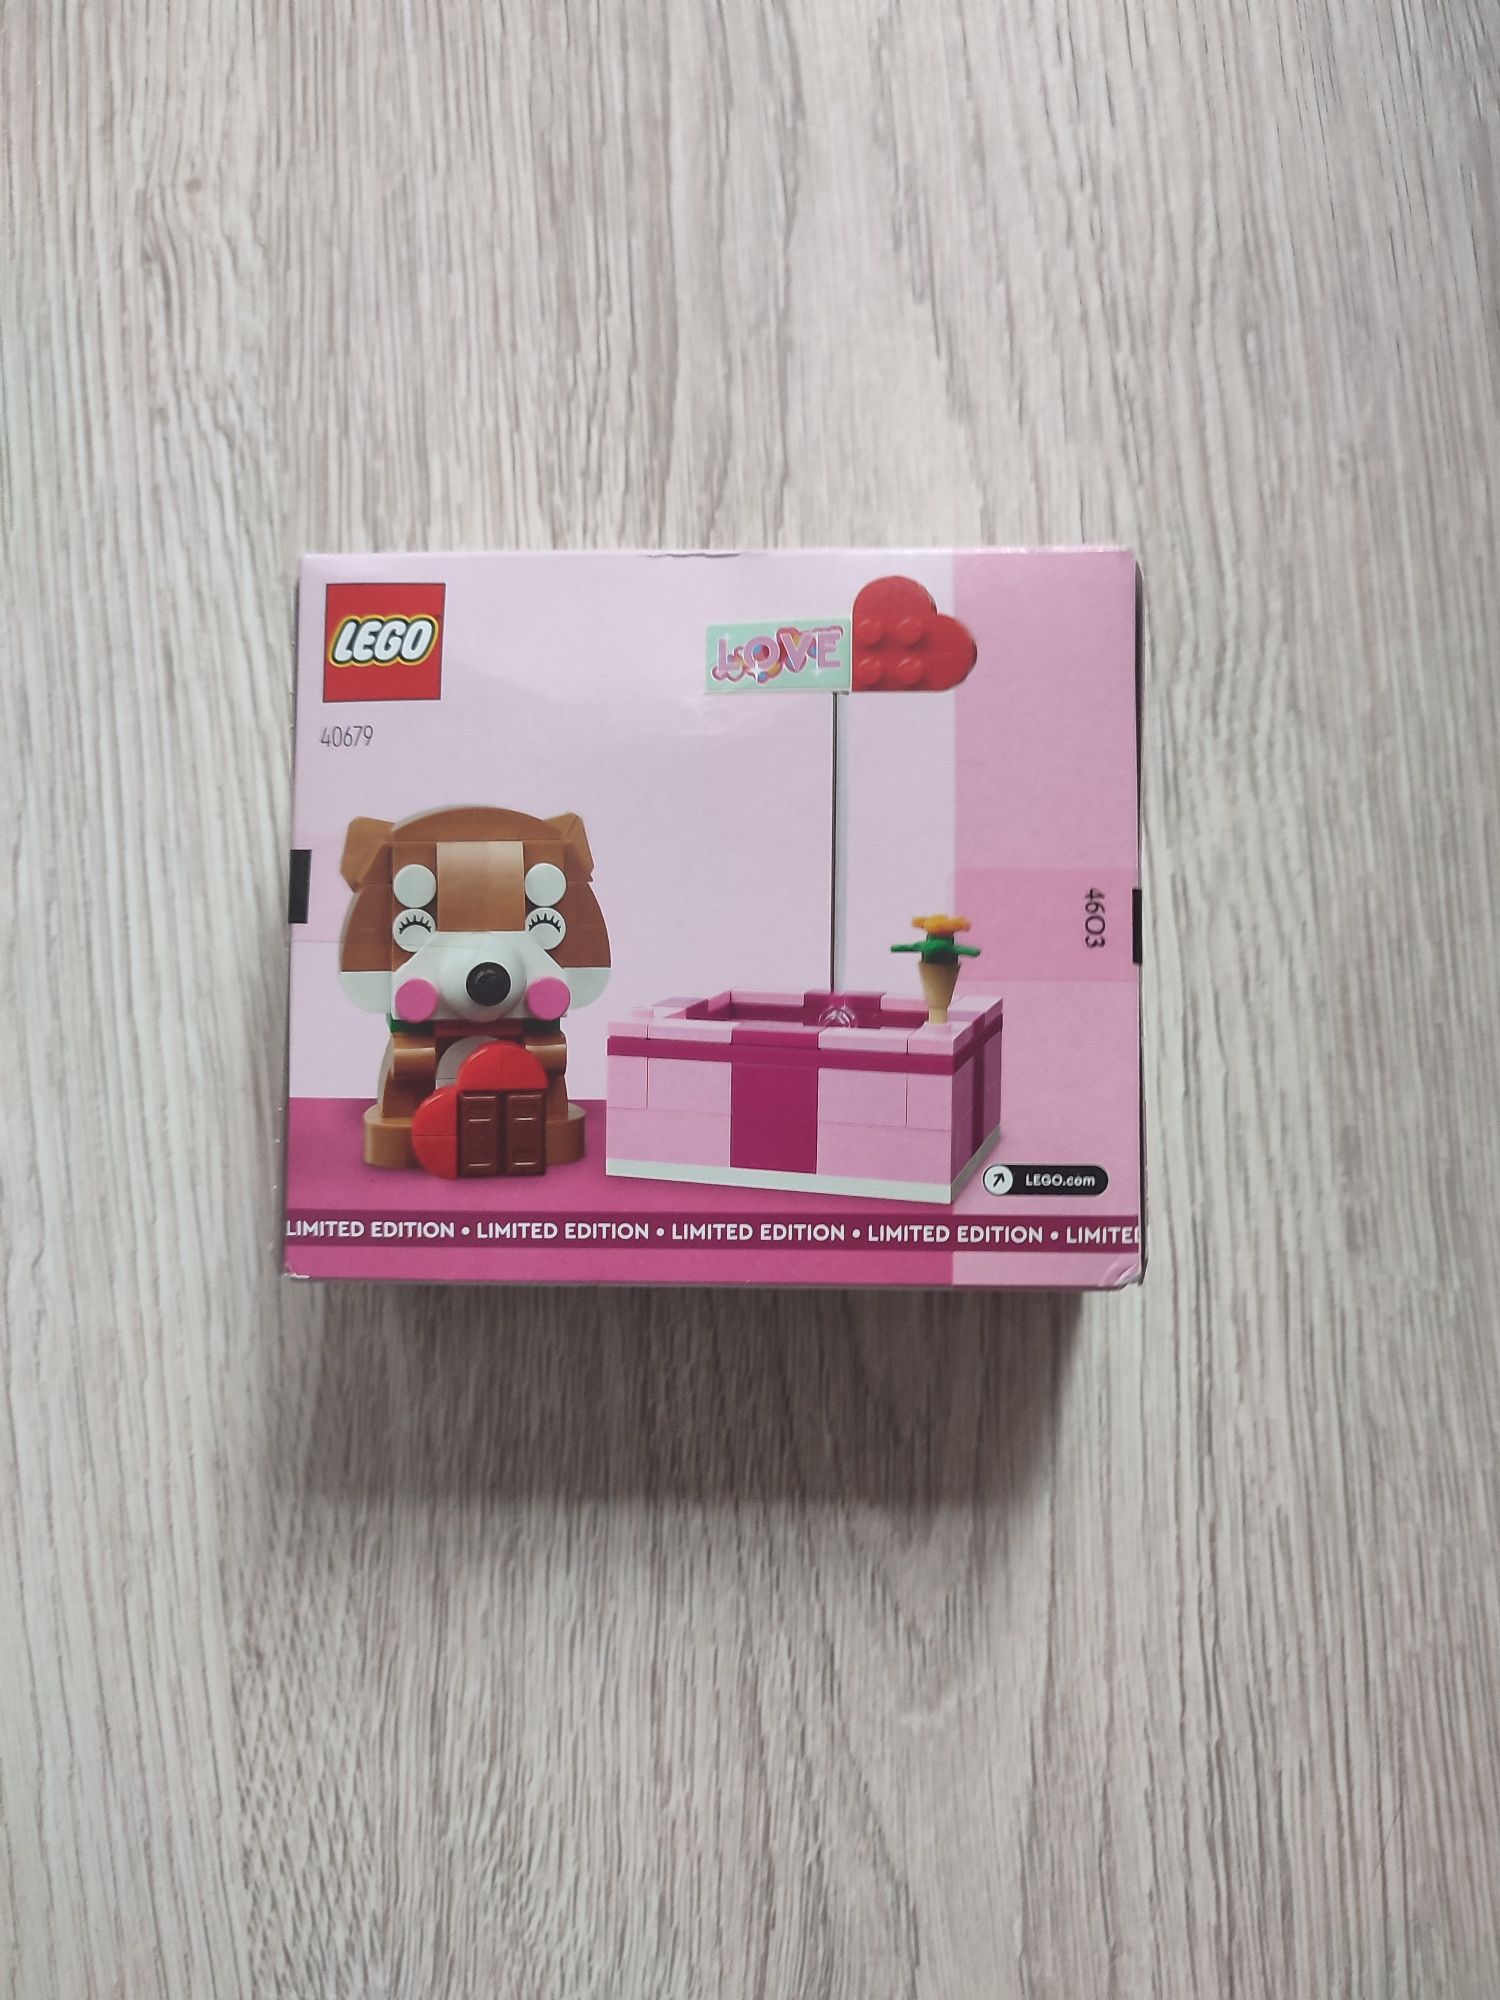 Lego 40679 Love Gift Box-Miłosne Pudełko
LEGO 4067